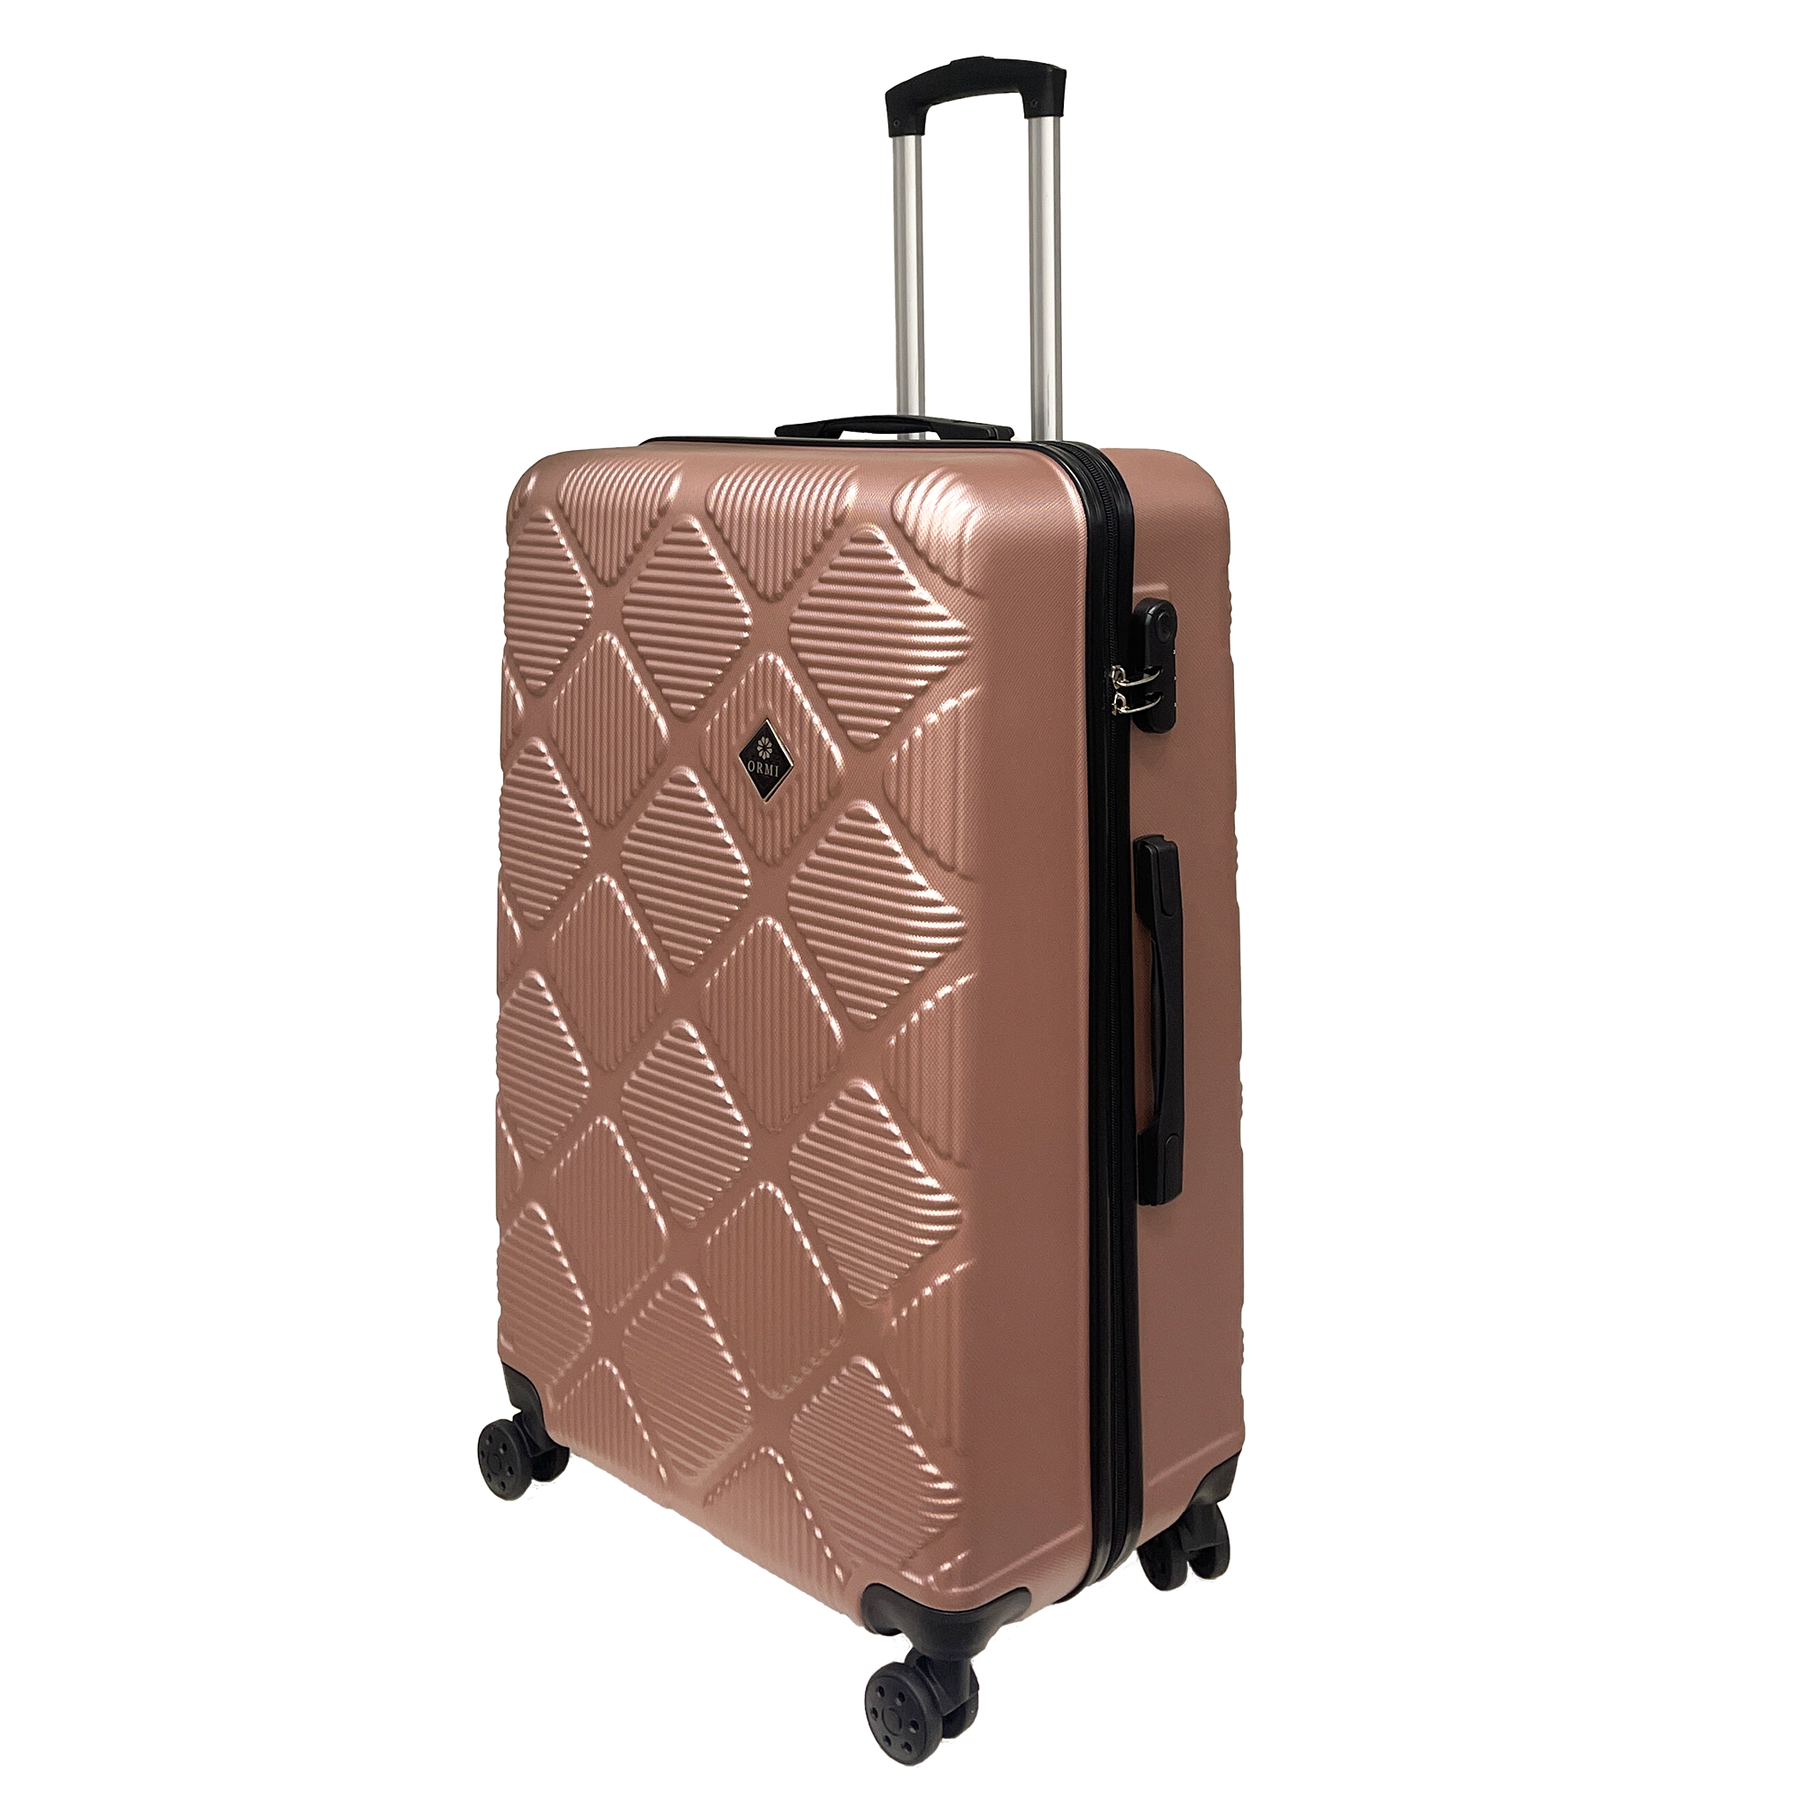 Ormi Diamond Lux: Velký kufr 75x50x30 cm, Tvrdý kufr a ultra lehký, 8 dynamických kol 360°